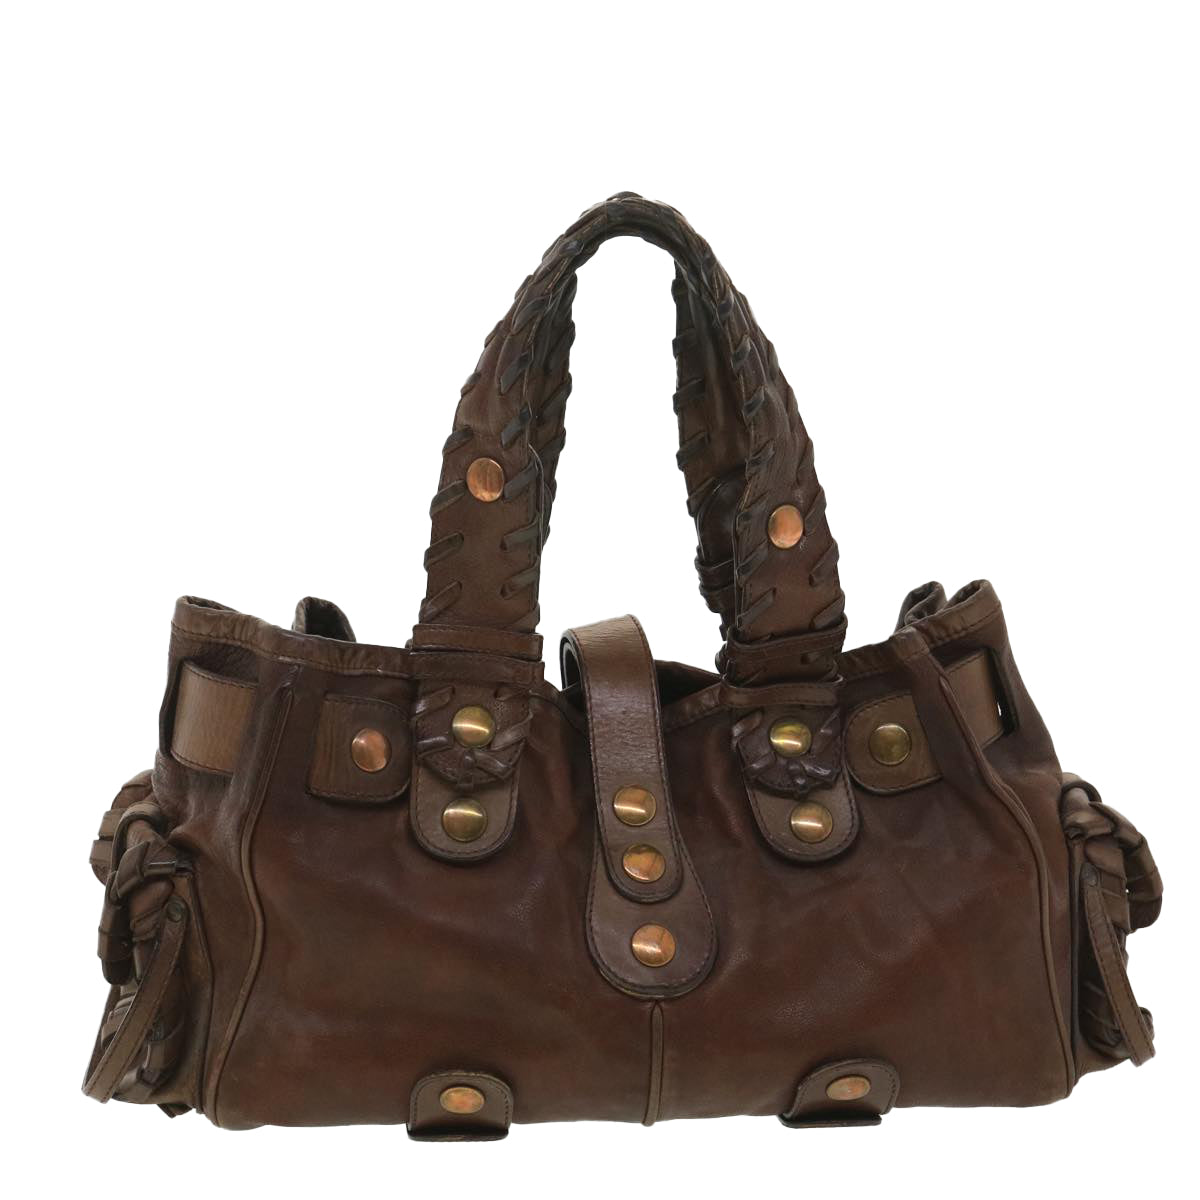 Chloe Hand Bag Leather Brown SA59-01-06--54 Auth 37835 - 0